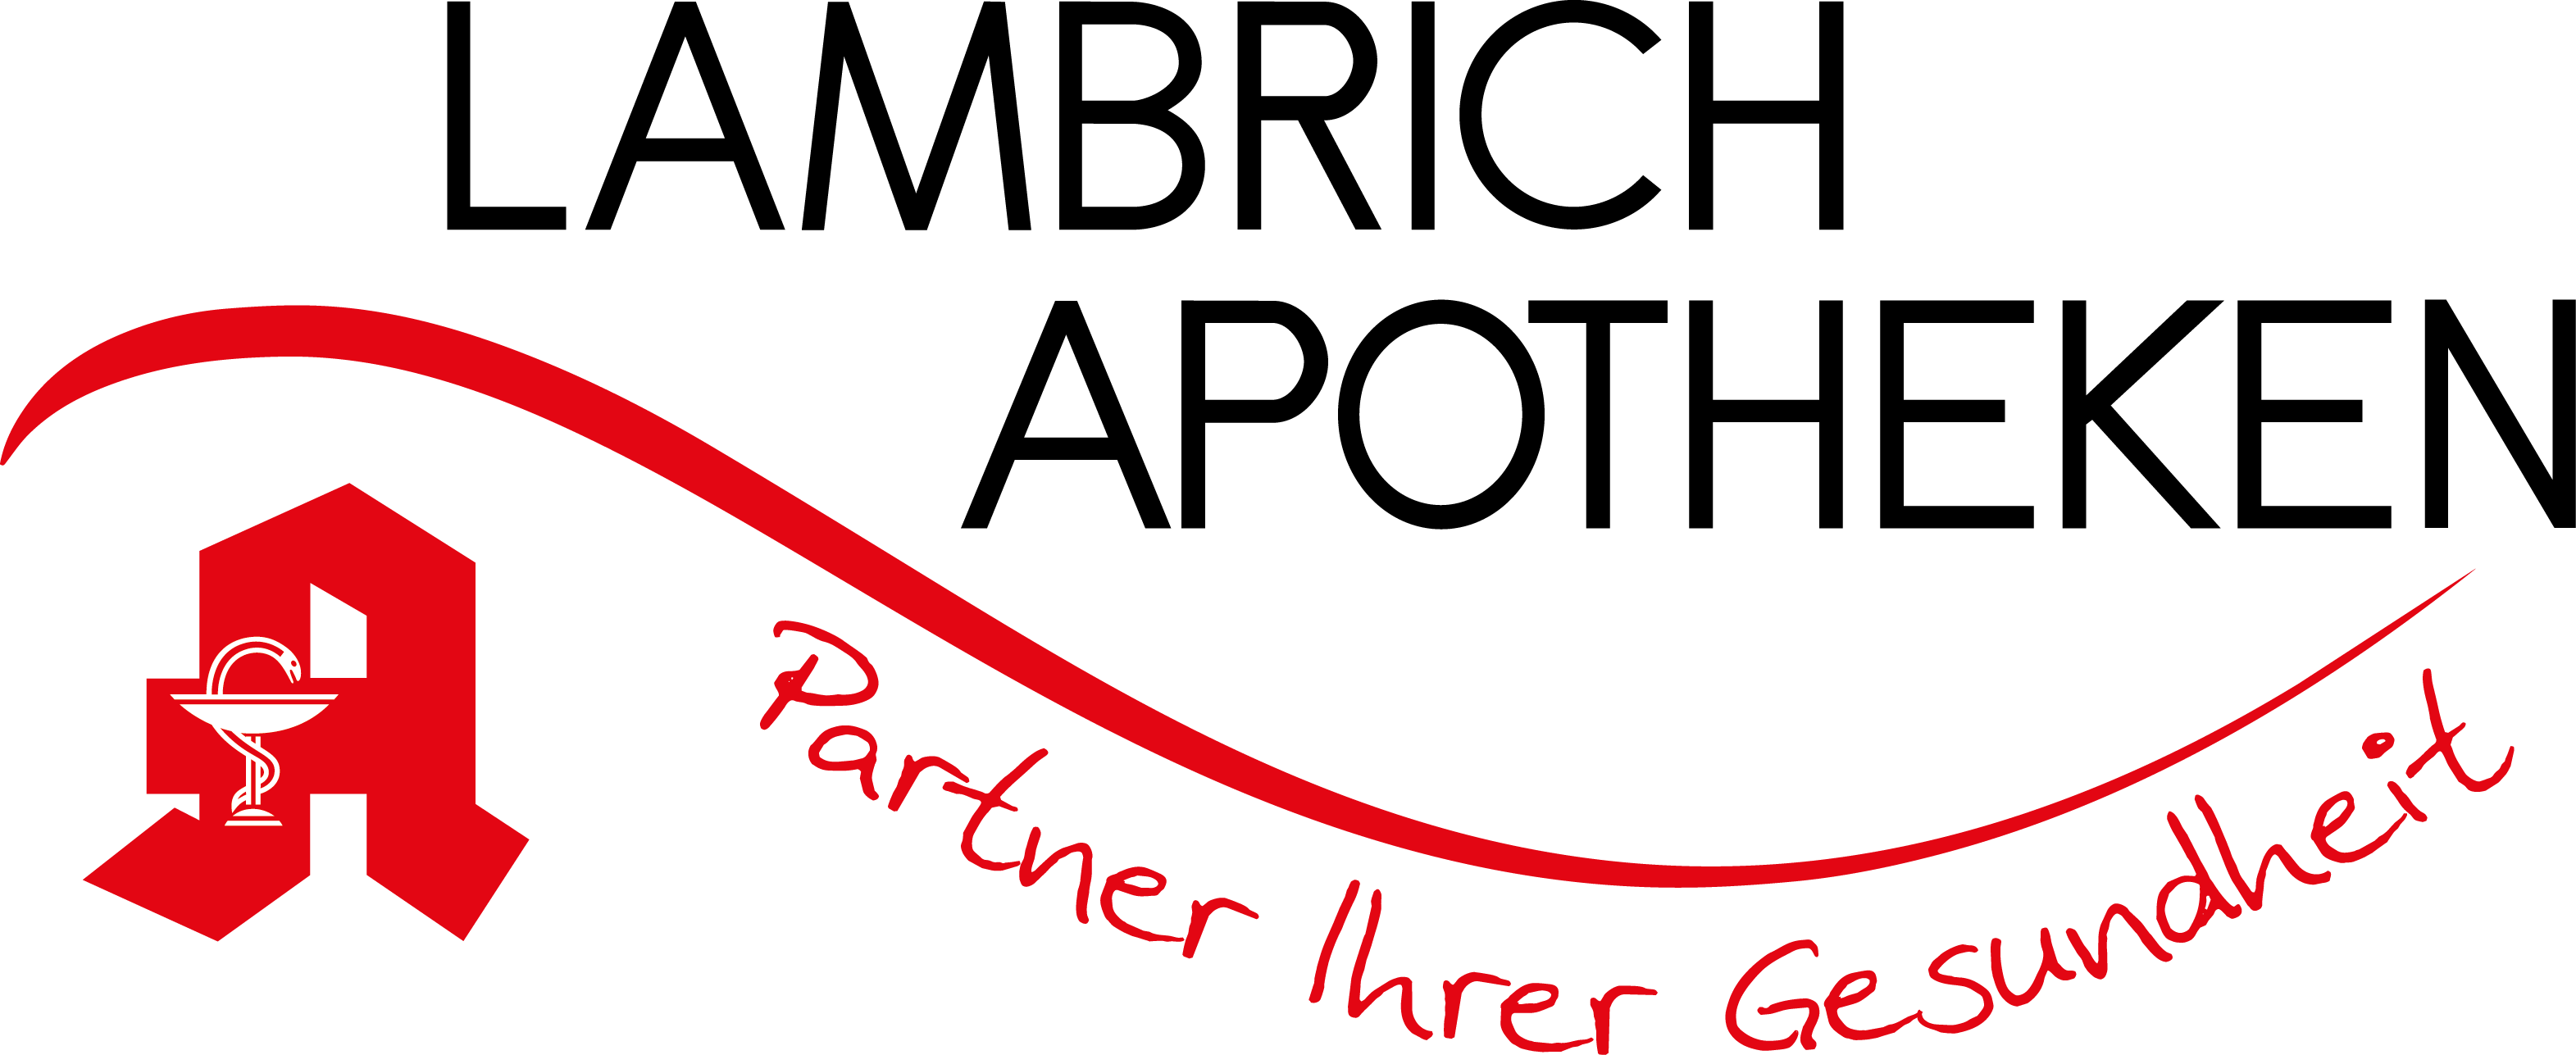 Lambrich